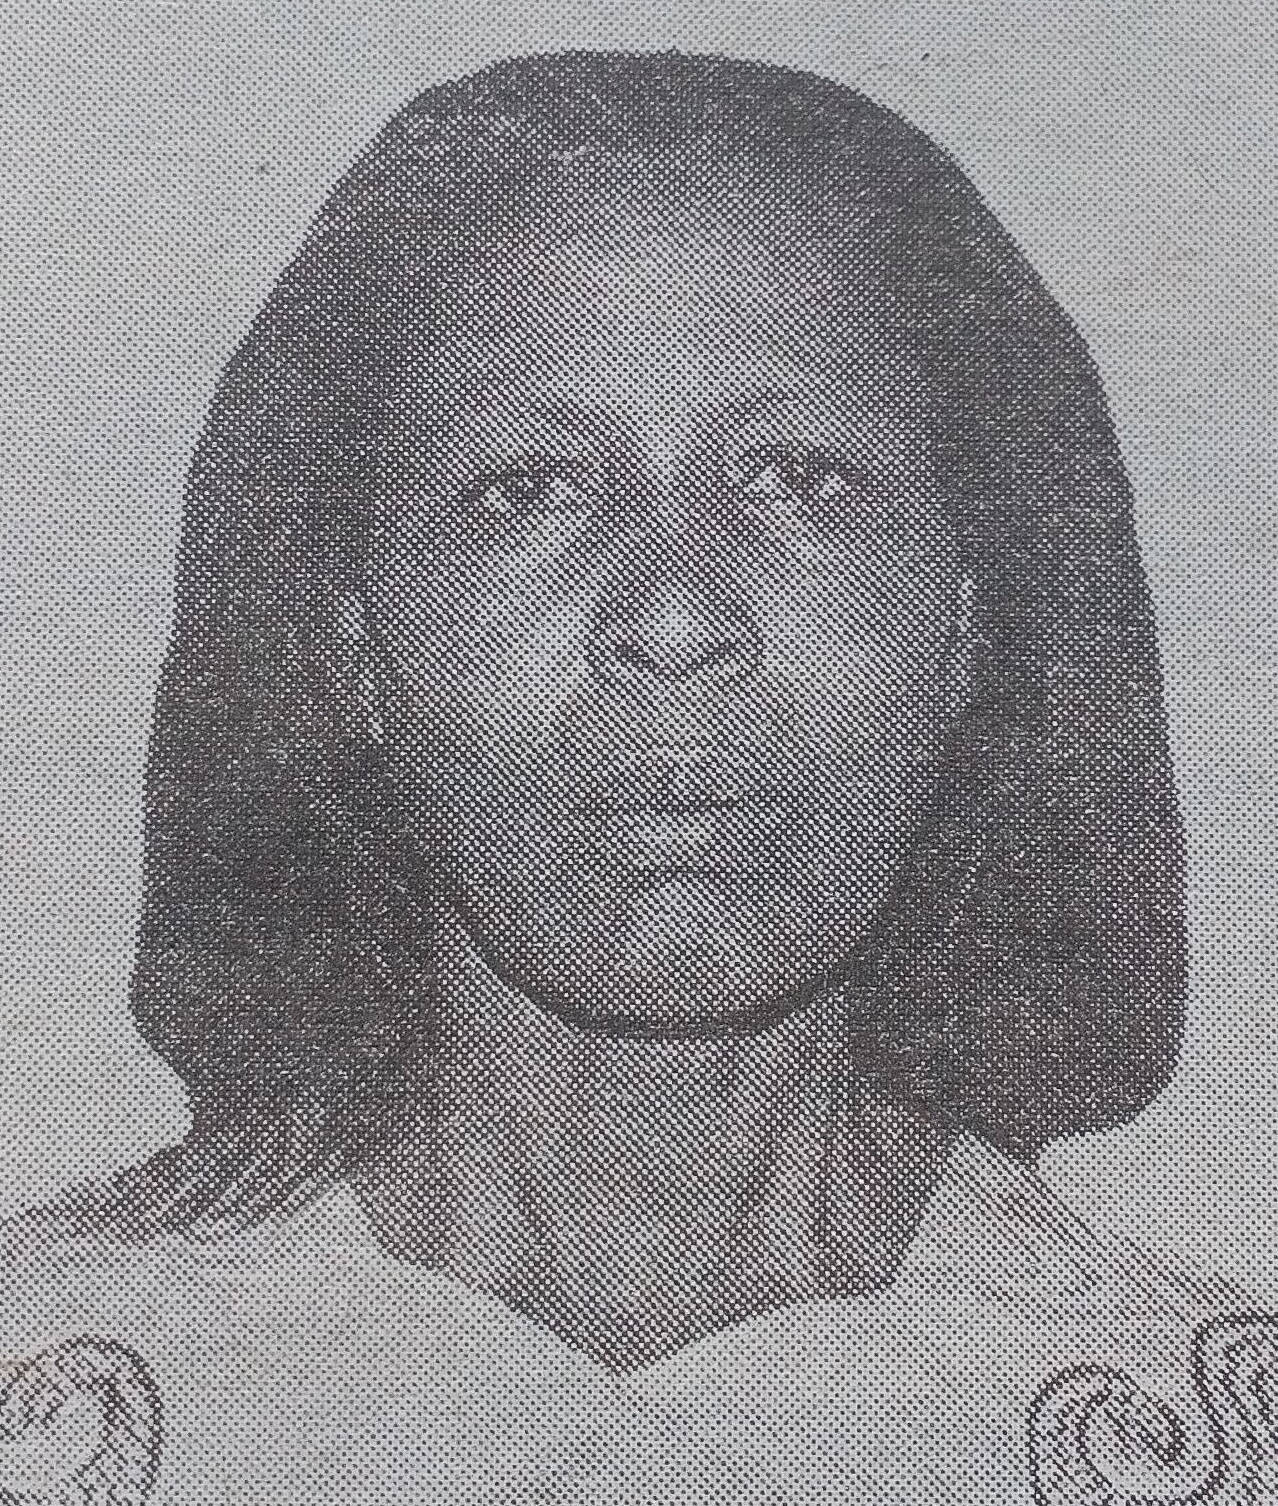 Obituary Image of Dorcus Ithaentli Muyekwe 1946 - 4/4/2007